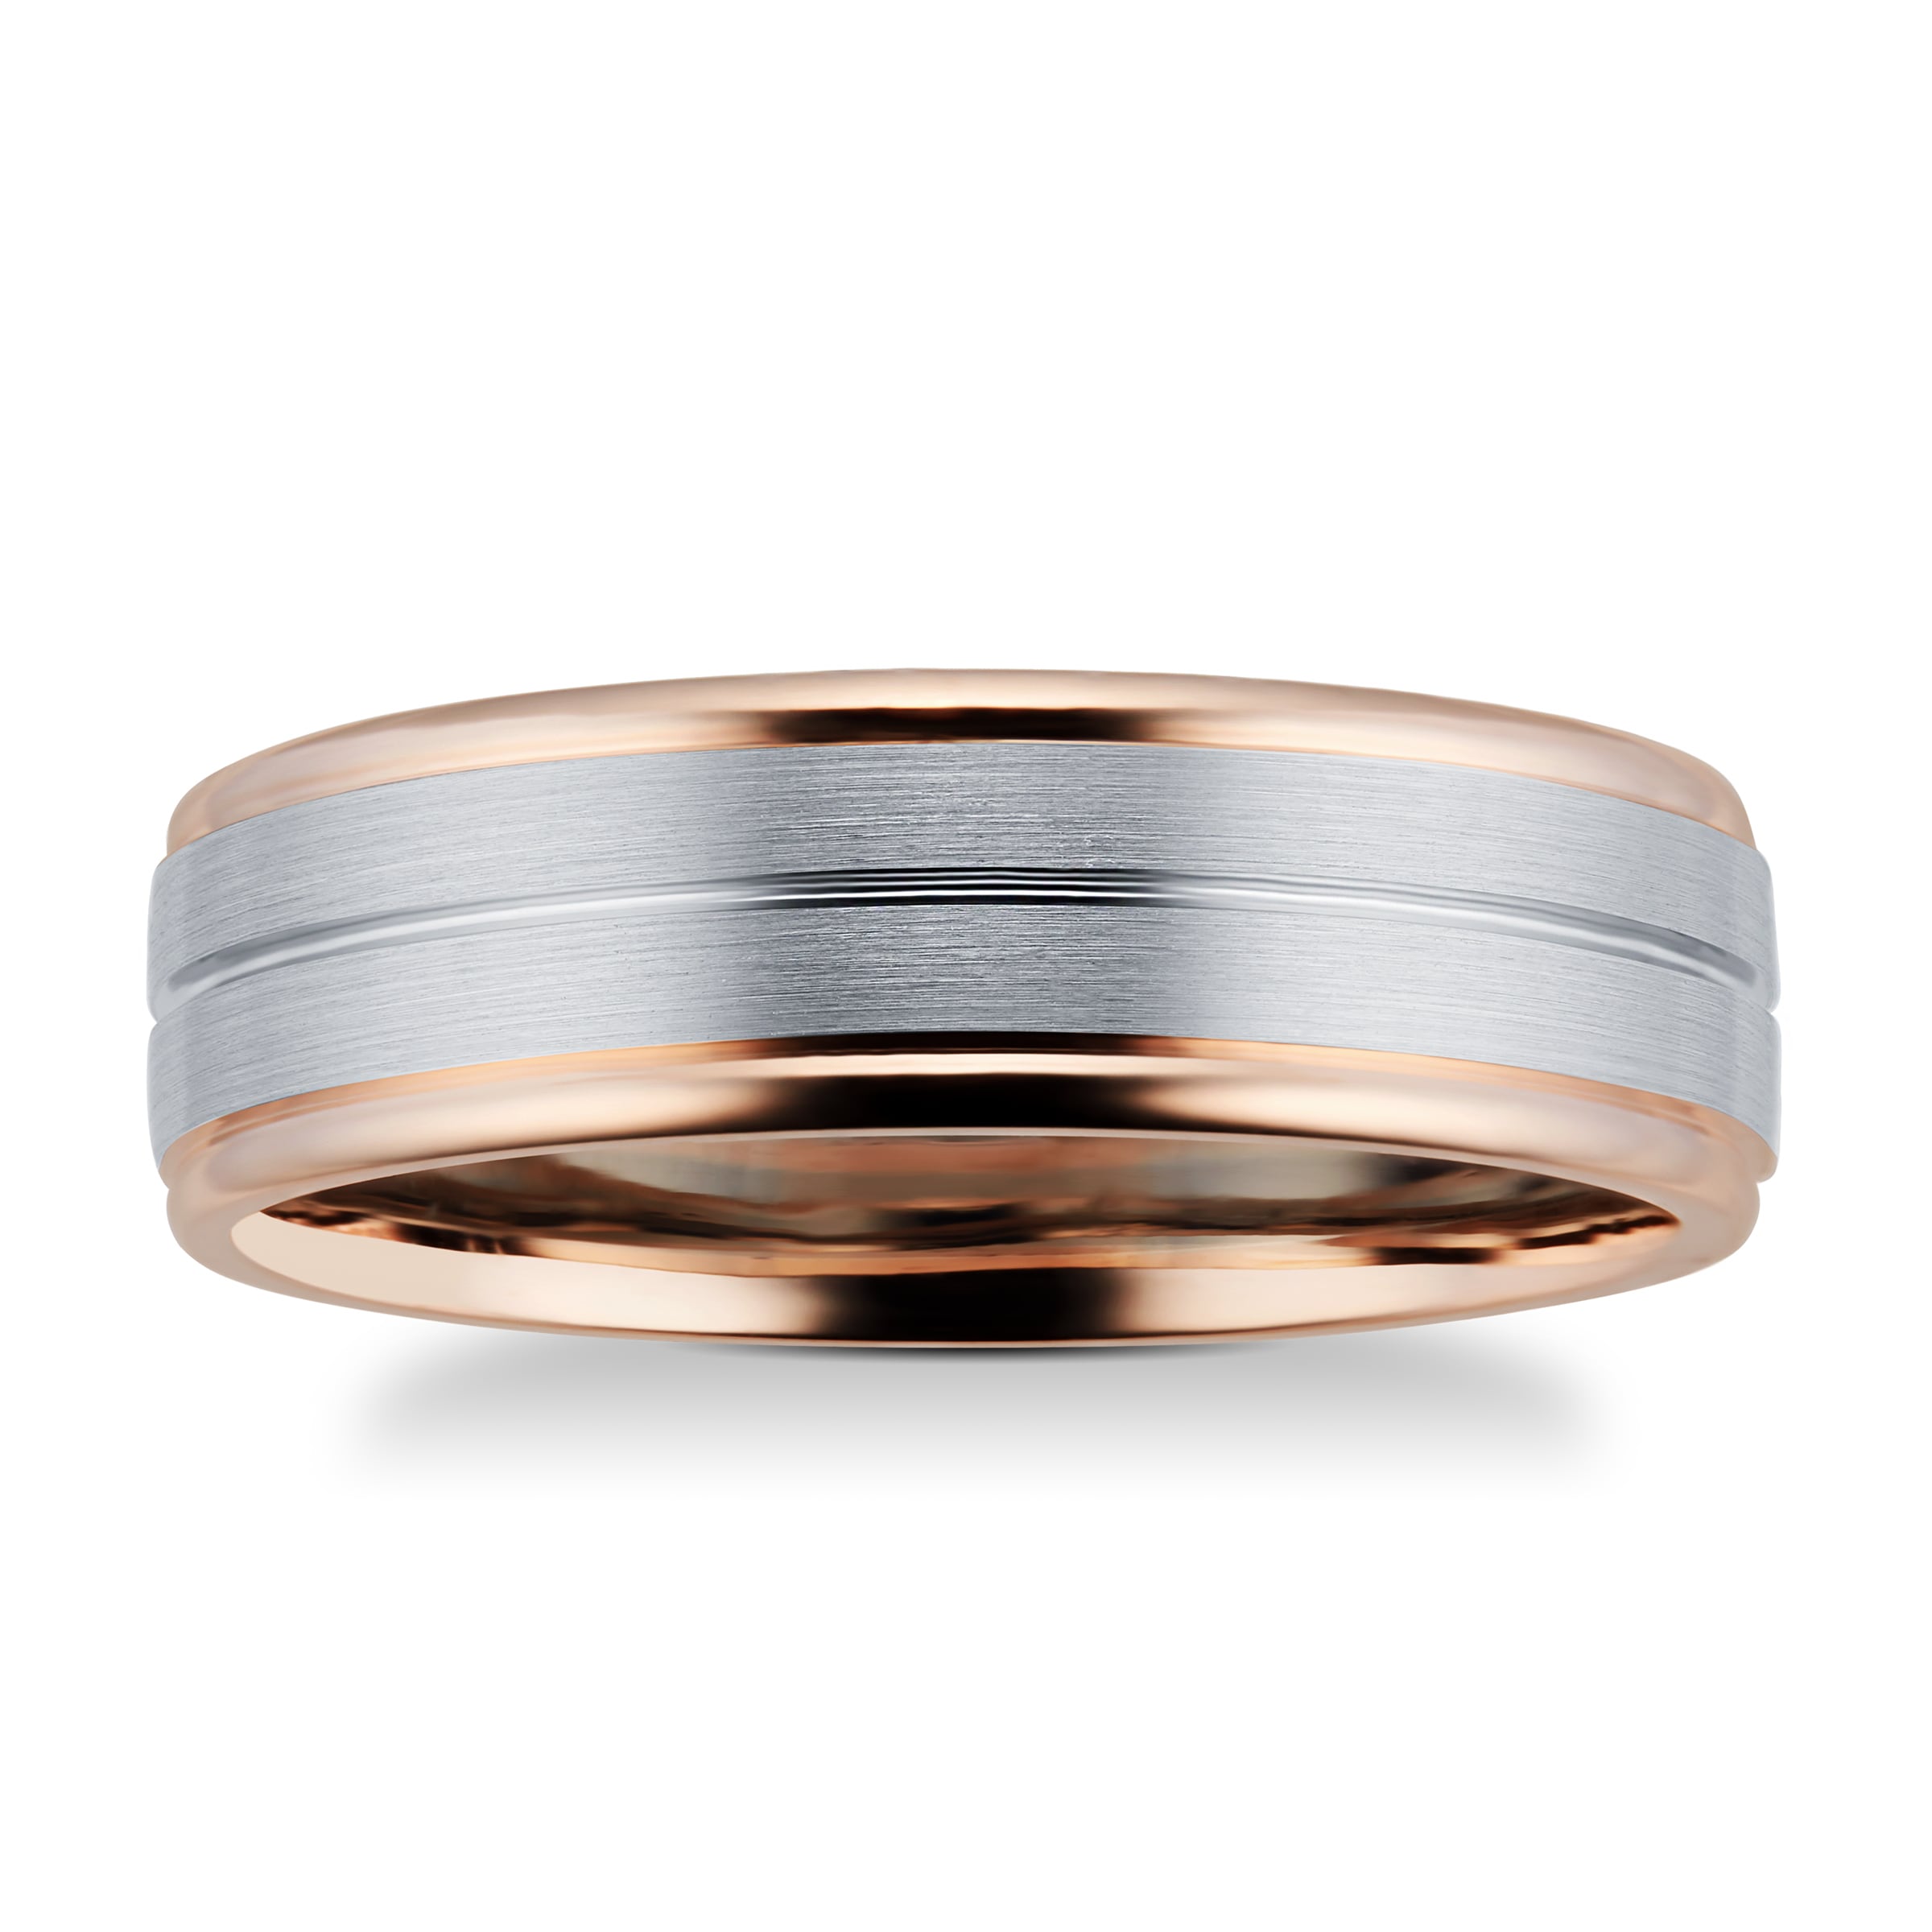 9ct Rose Gold & Palladium Wedding Ring - Ring Size U